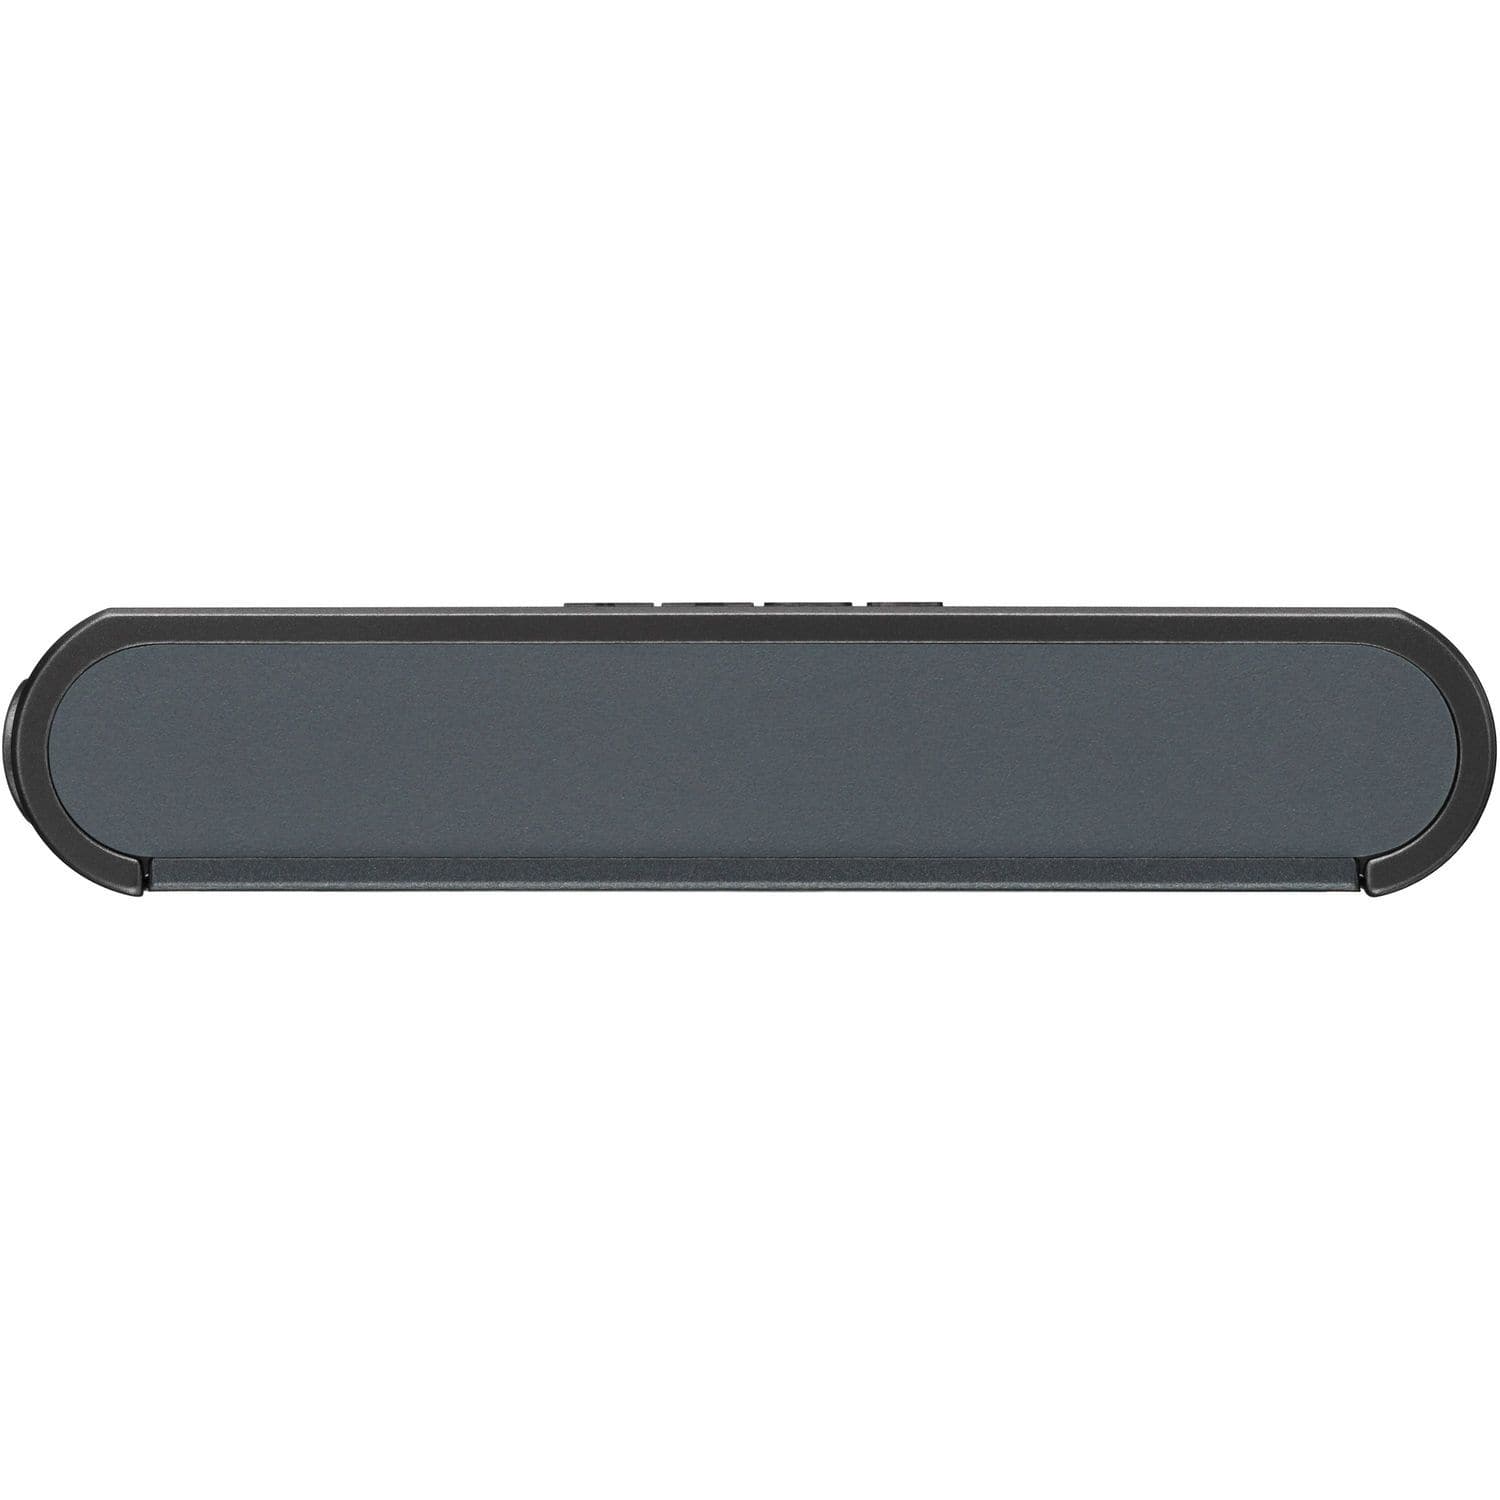 Sony NW-A55 Walkman Digital Audio Player 16 Go